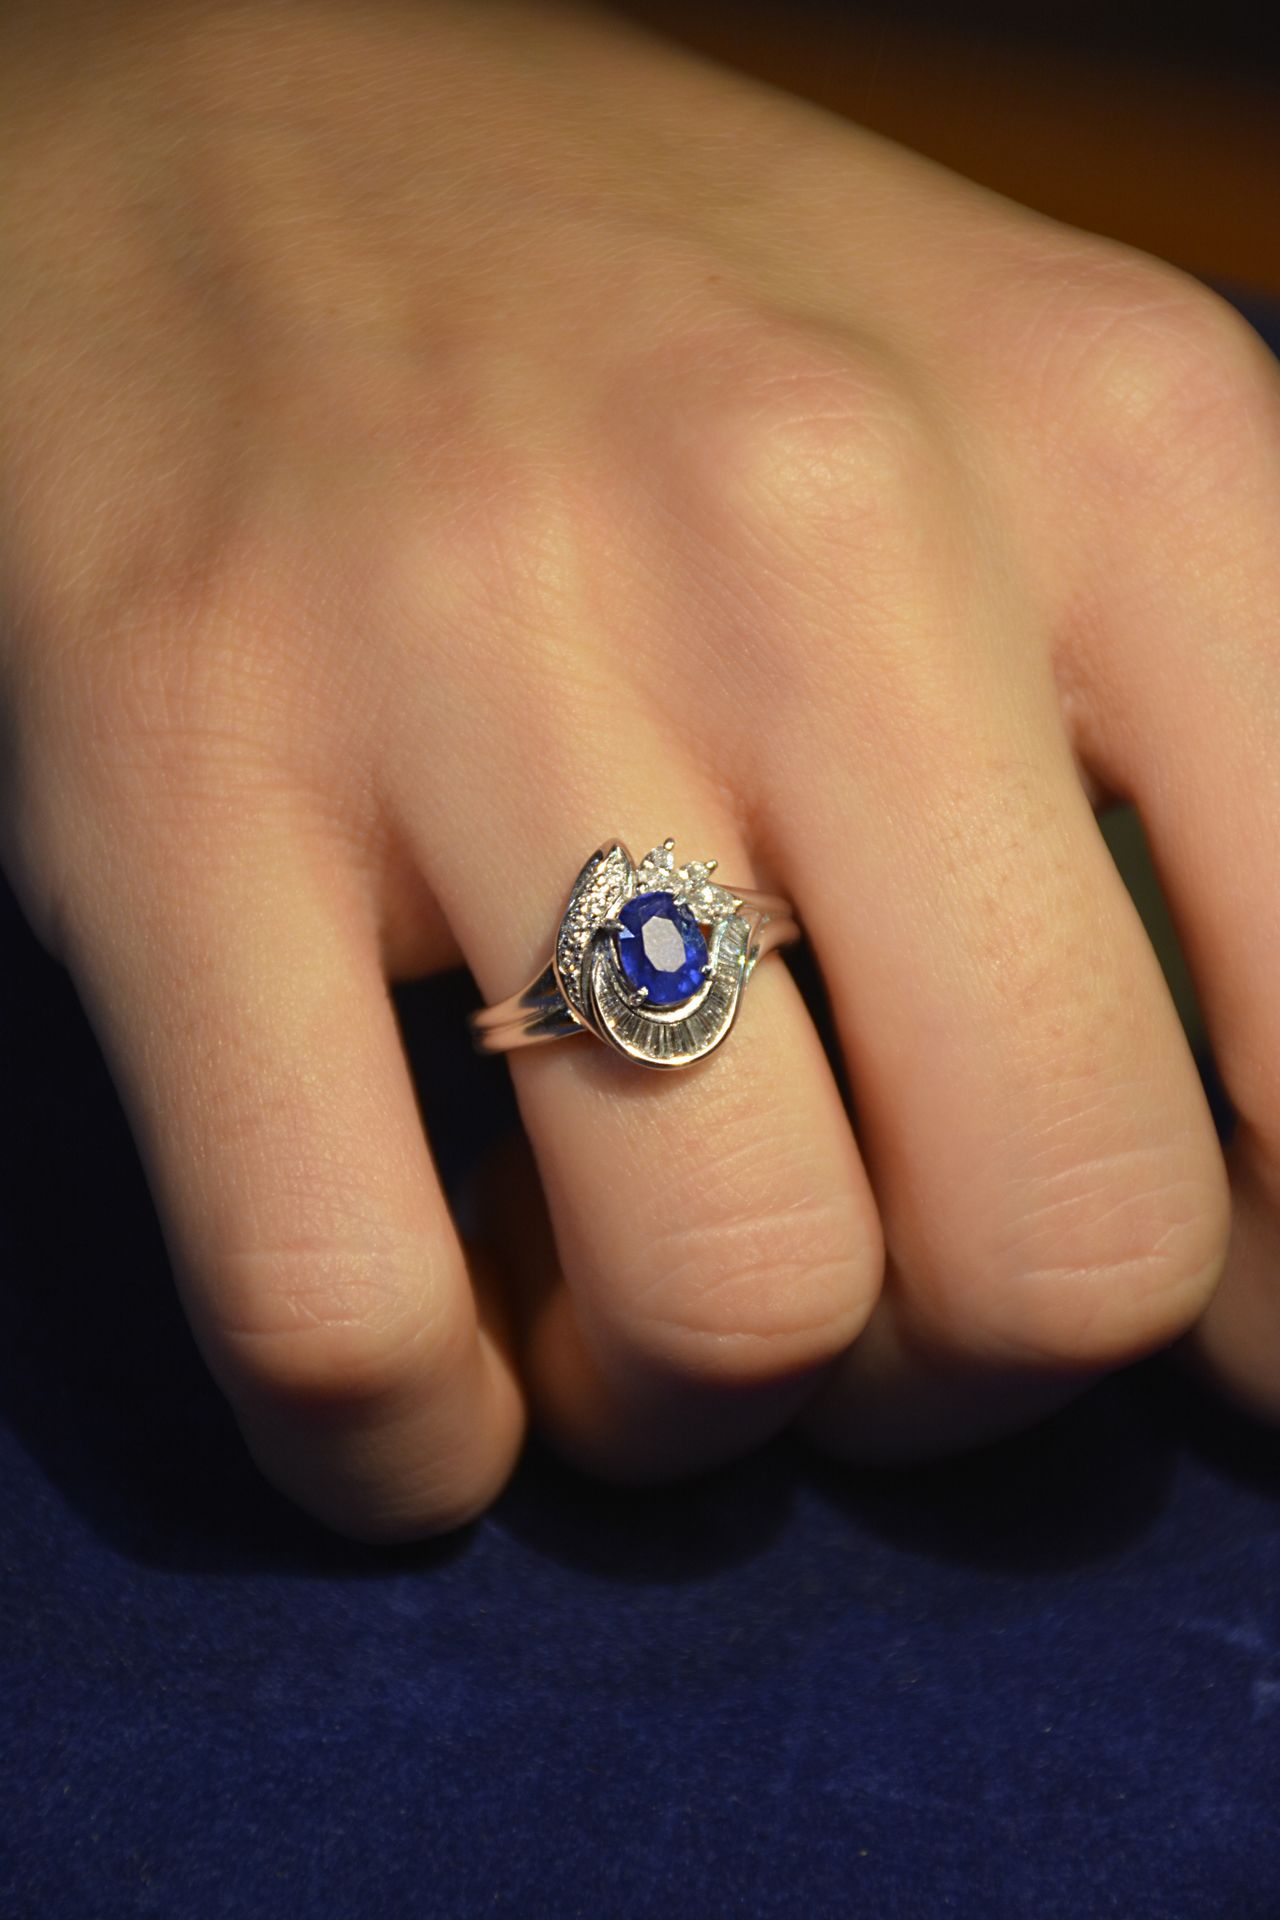 Null 18K白金戒指，中央为缅甸蓝宝石，重1.18克拉。宝石学证书GIA编号3435783888。戒指尺寸为12号